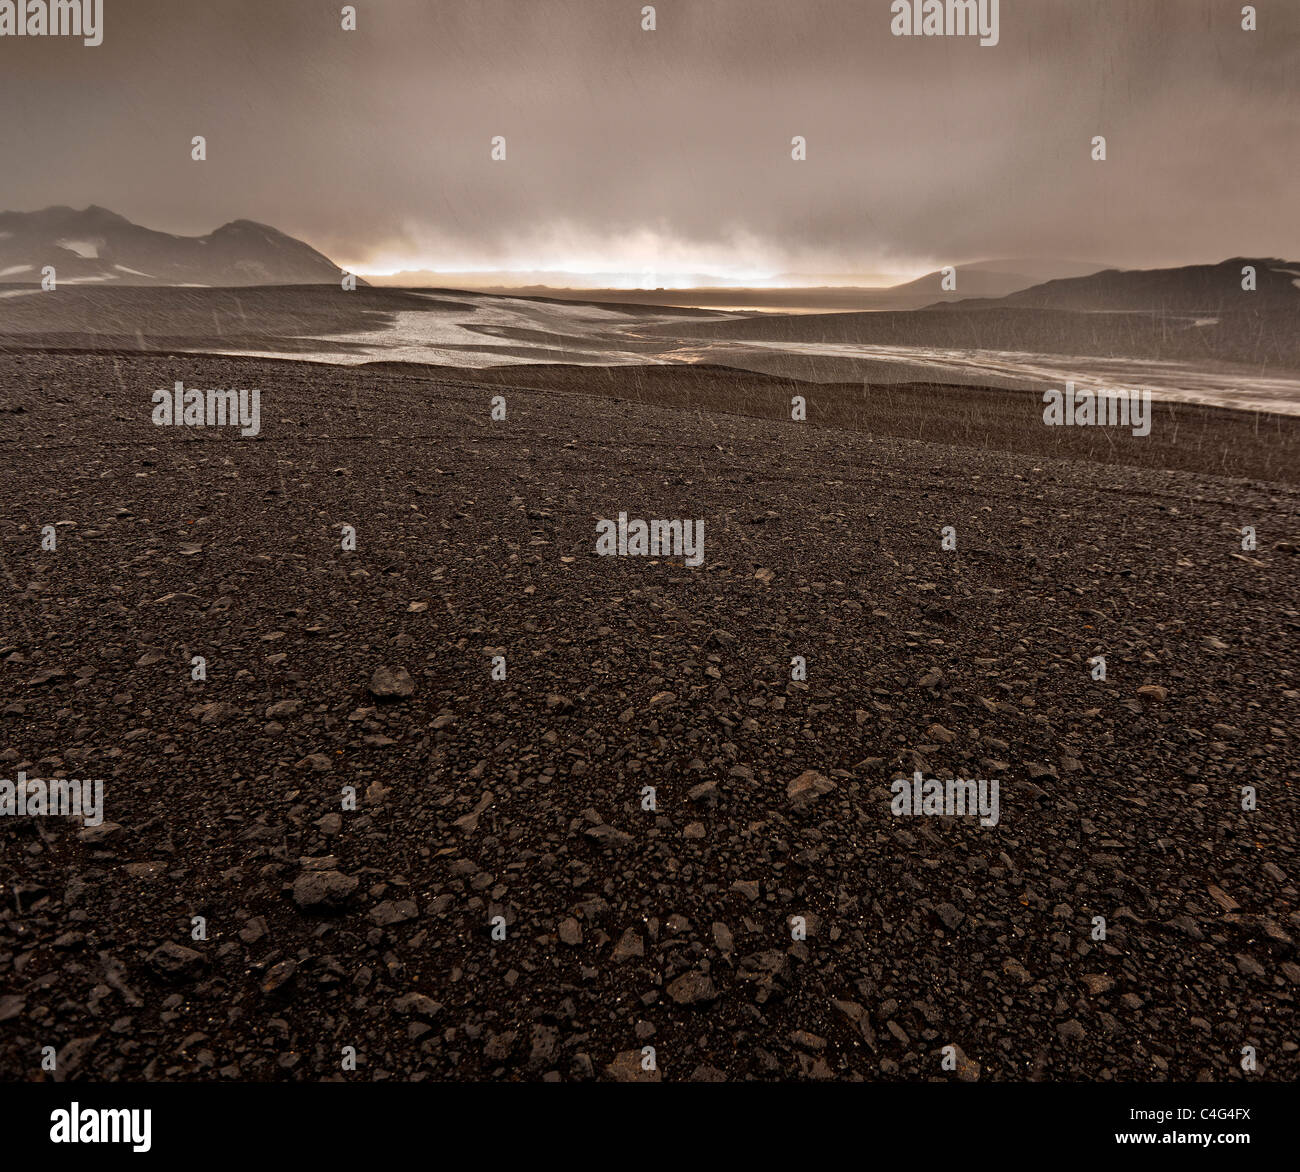 Schlechtes Wetter mit Hagel und Regen auf Asche gefüllt Gletscherlandschaft, Vulkanausbruch Grimsvötn, Island Stockfoto